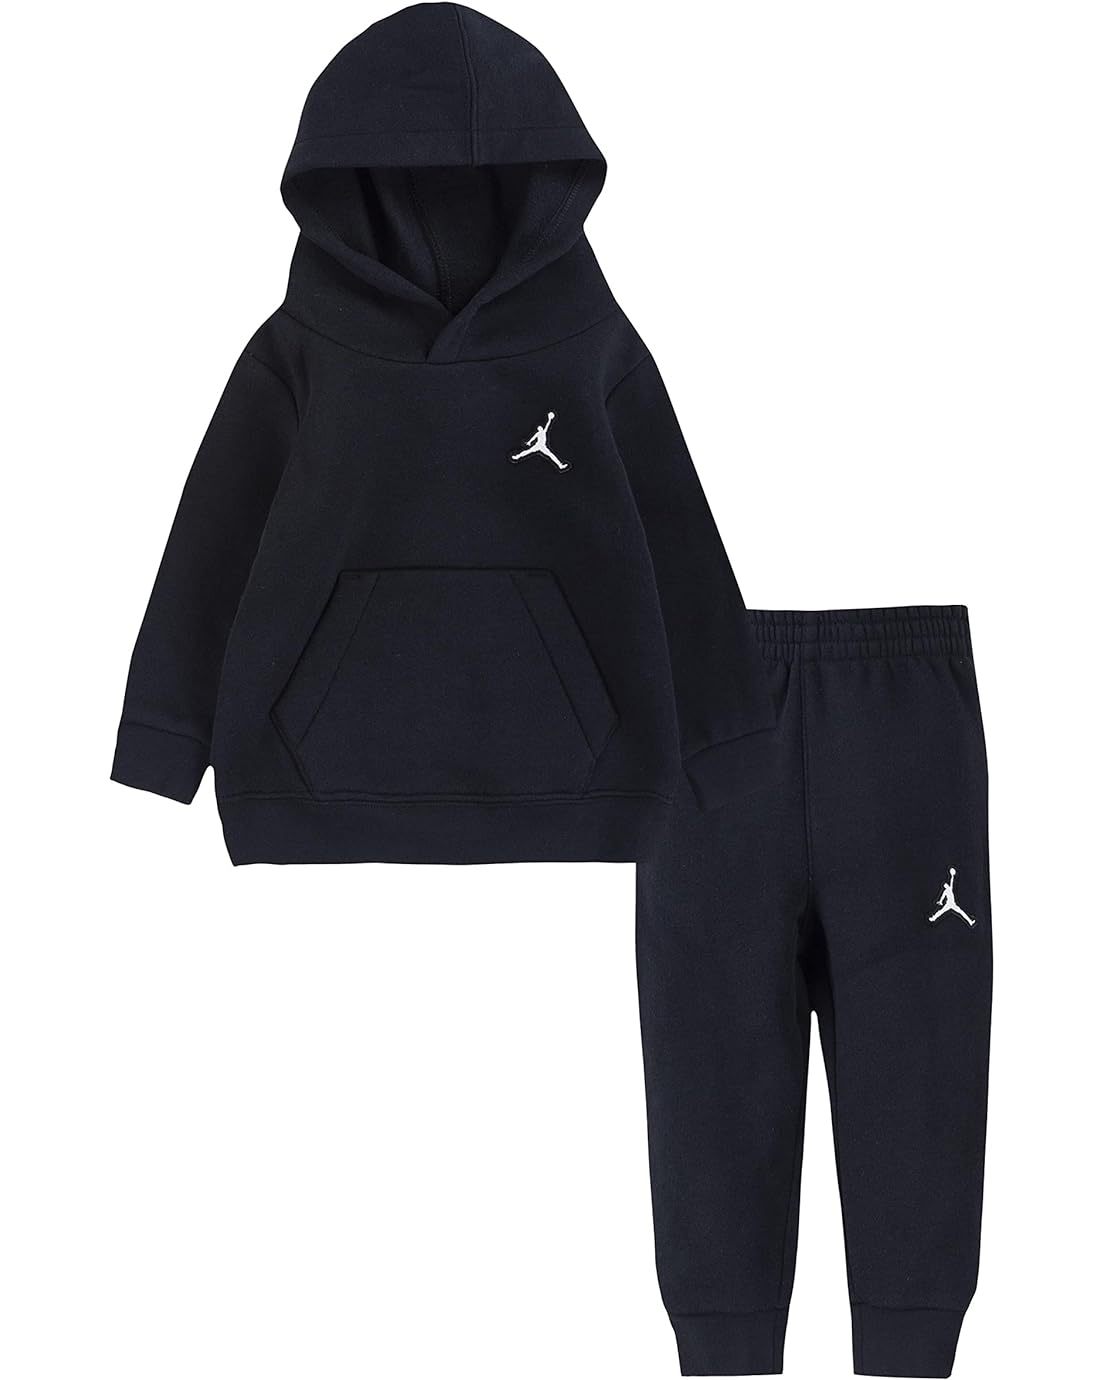 Jordan Kids Essential Pullover Set (Infant)